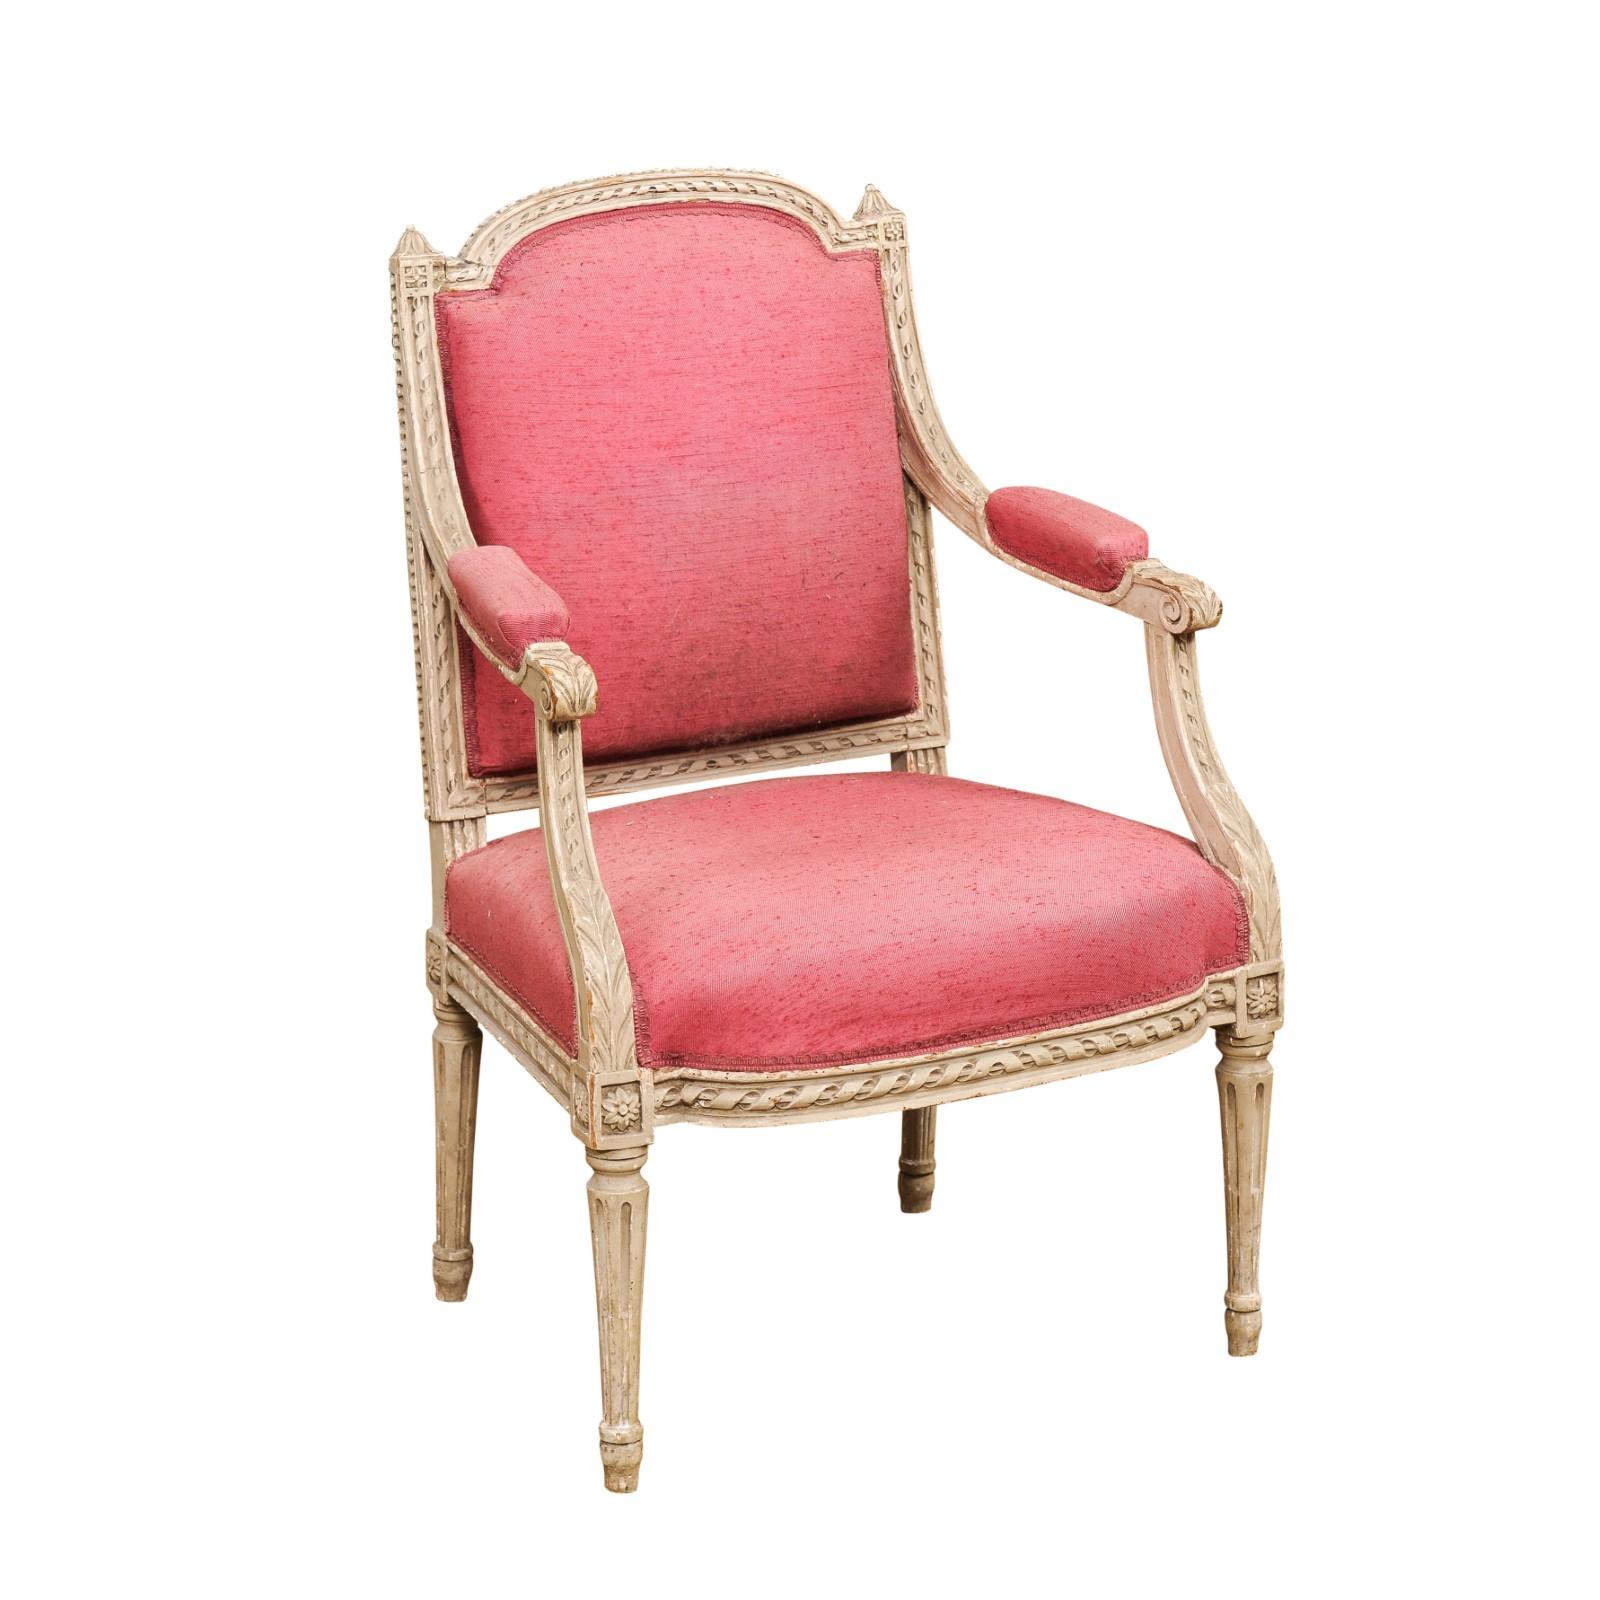 Ein französischer Sessel aus bemaltem Holz im Louis-XVI-Stil aus dem 19. Jahrhundert mit geschnitztem Dekor, darunter verschlungene Seilmotive, Akanthusblätter, Rosetten und kleine Perlen. Tauchen Sie ein in die Ära der französischen Eleganz mit